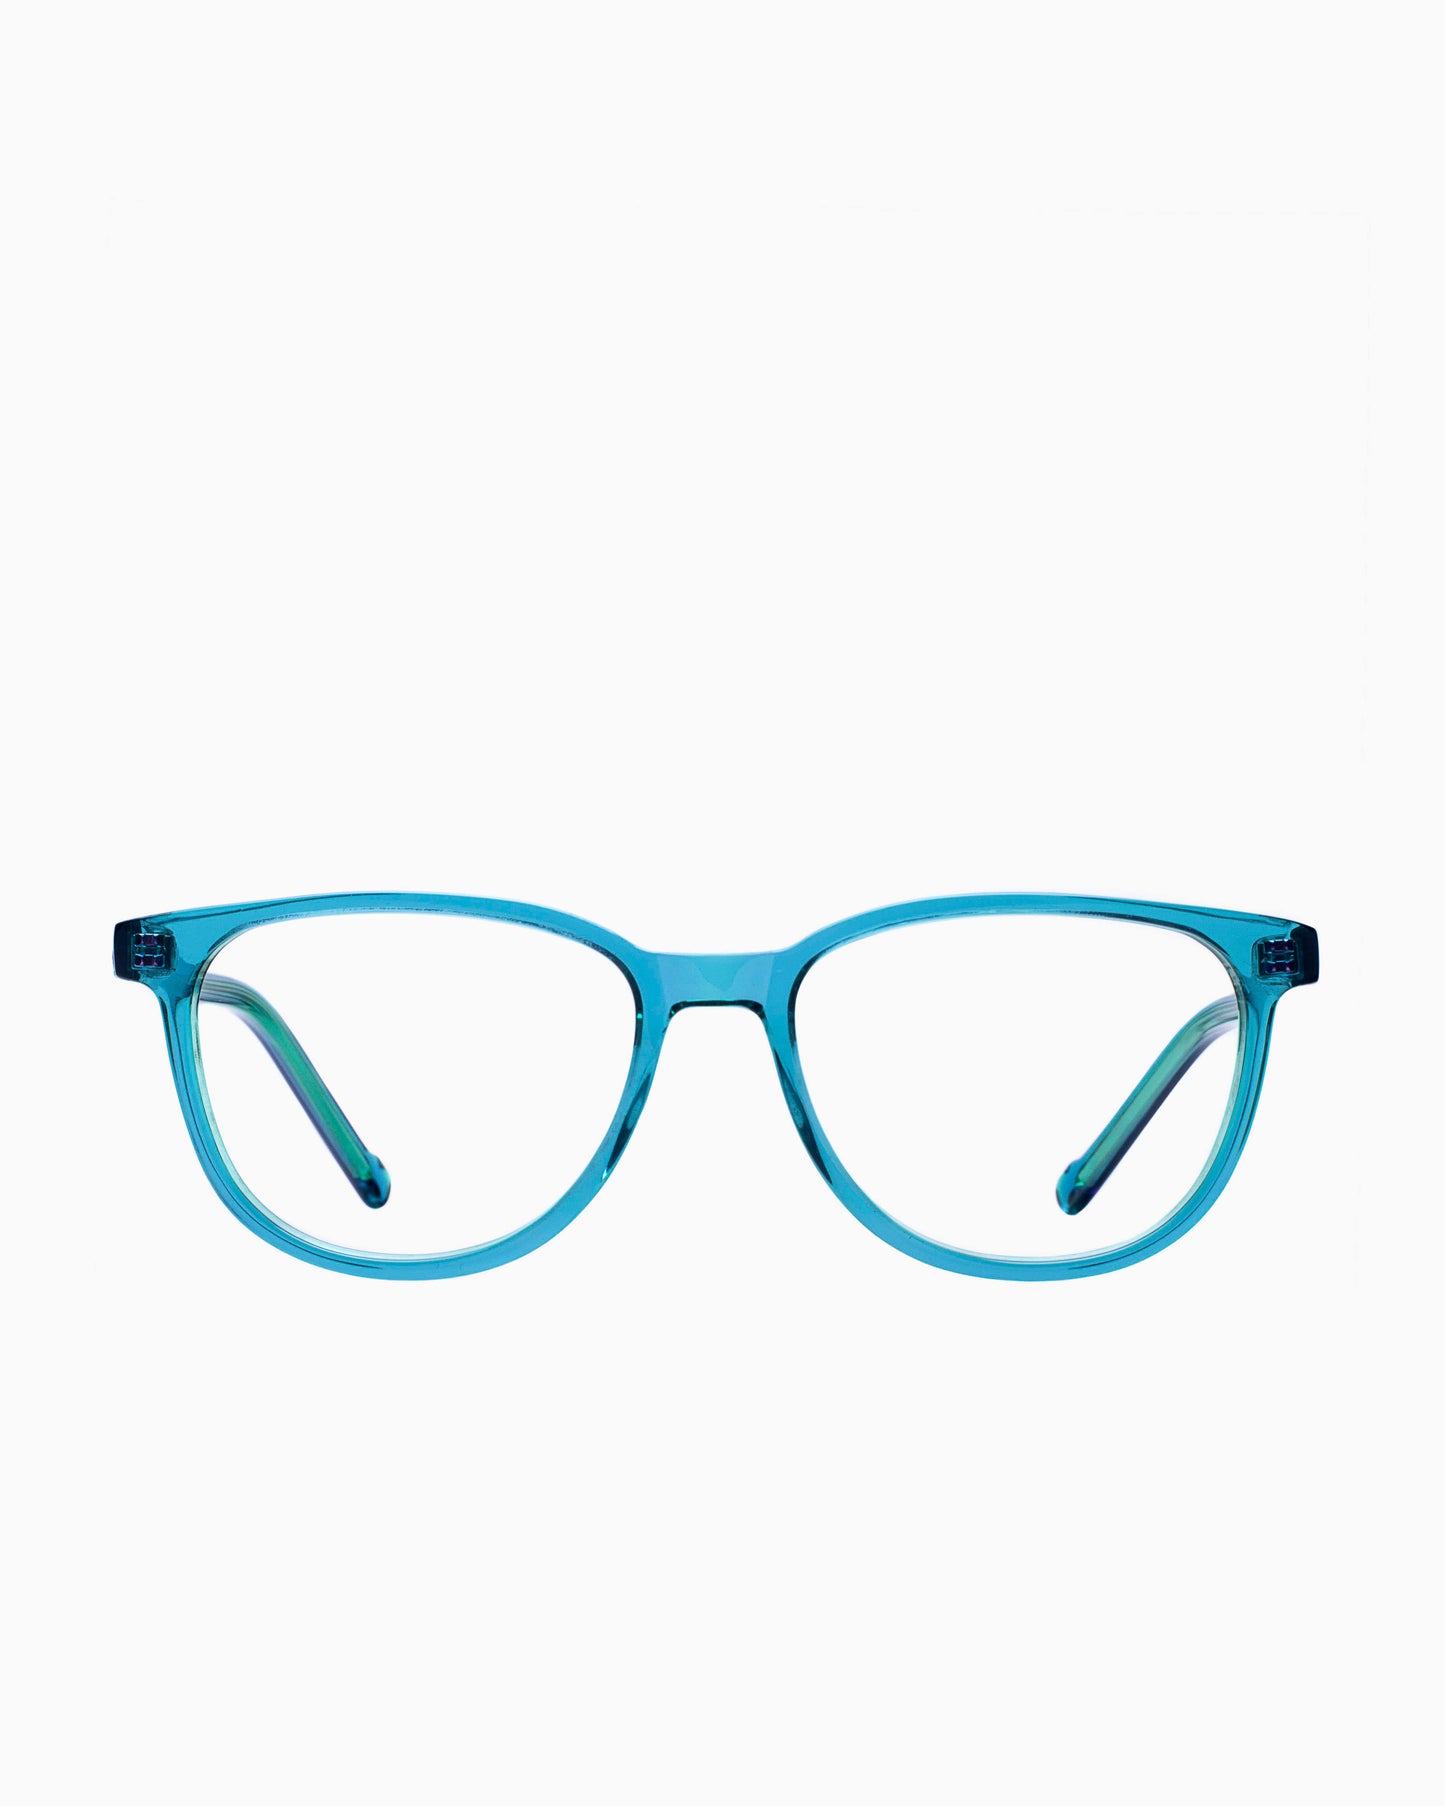 BBig - 236 - 441 | glasses bar